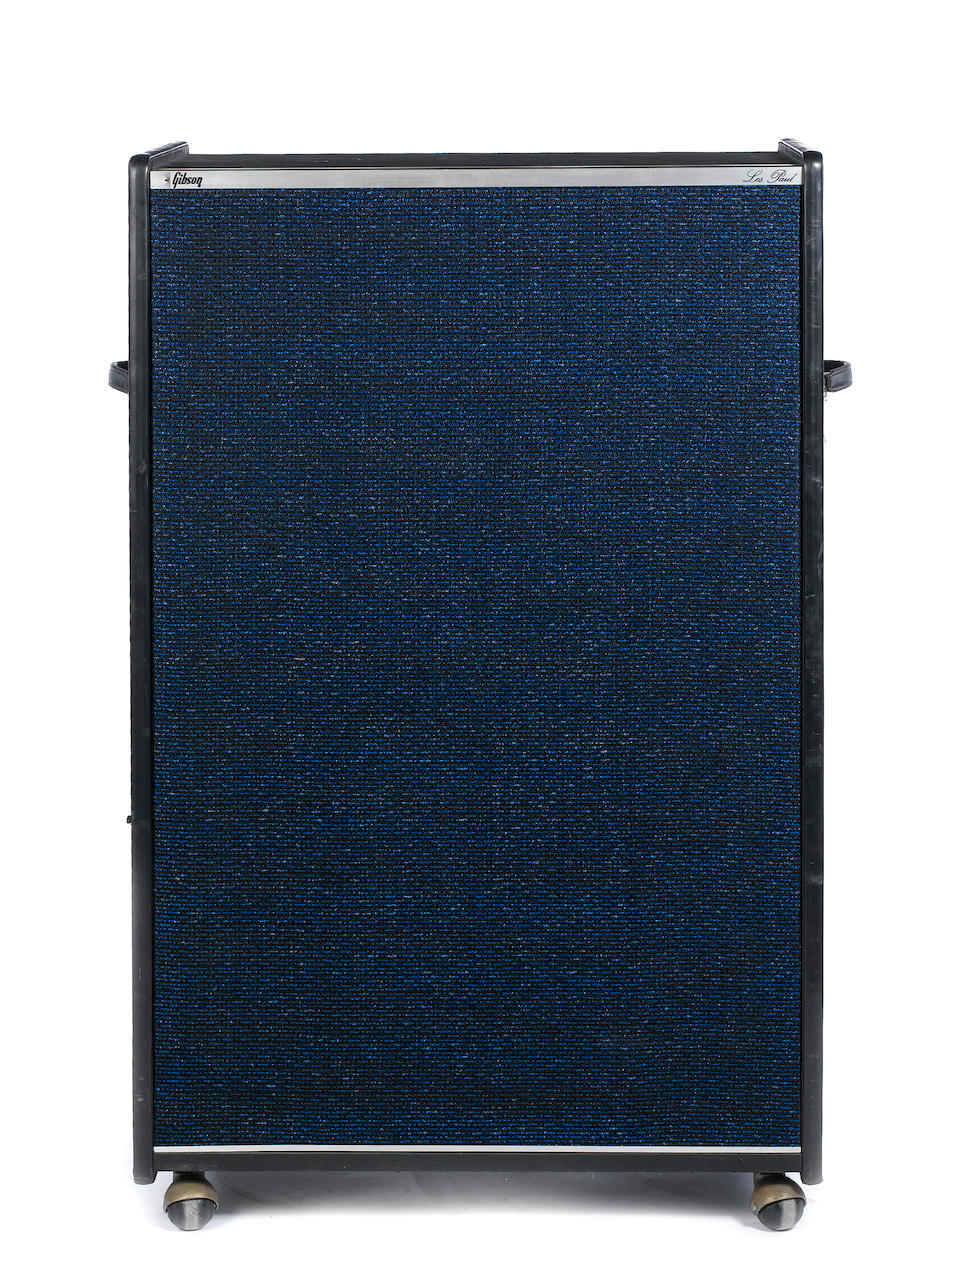 A circa 1970 Gibson LP-2, Serial No. 1013, 2